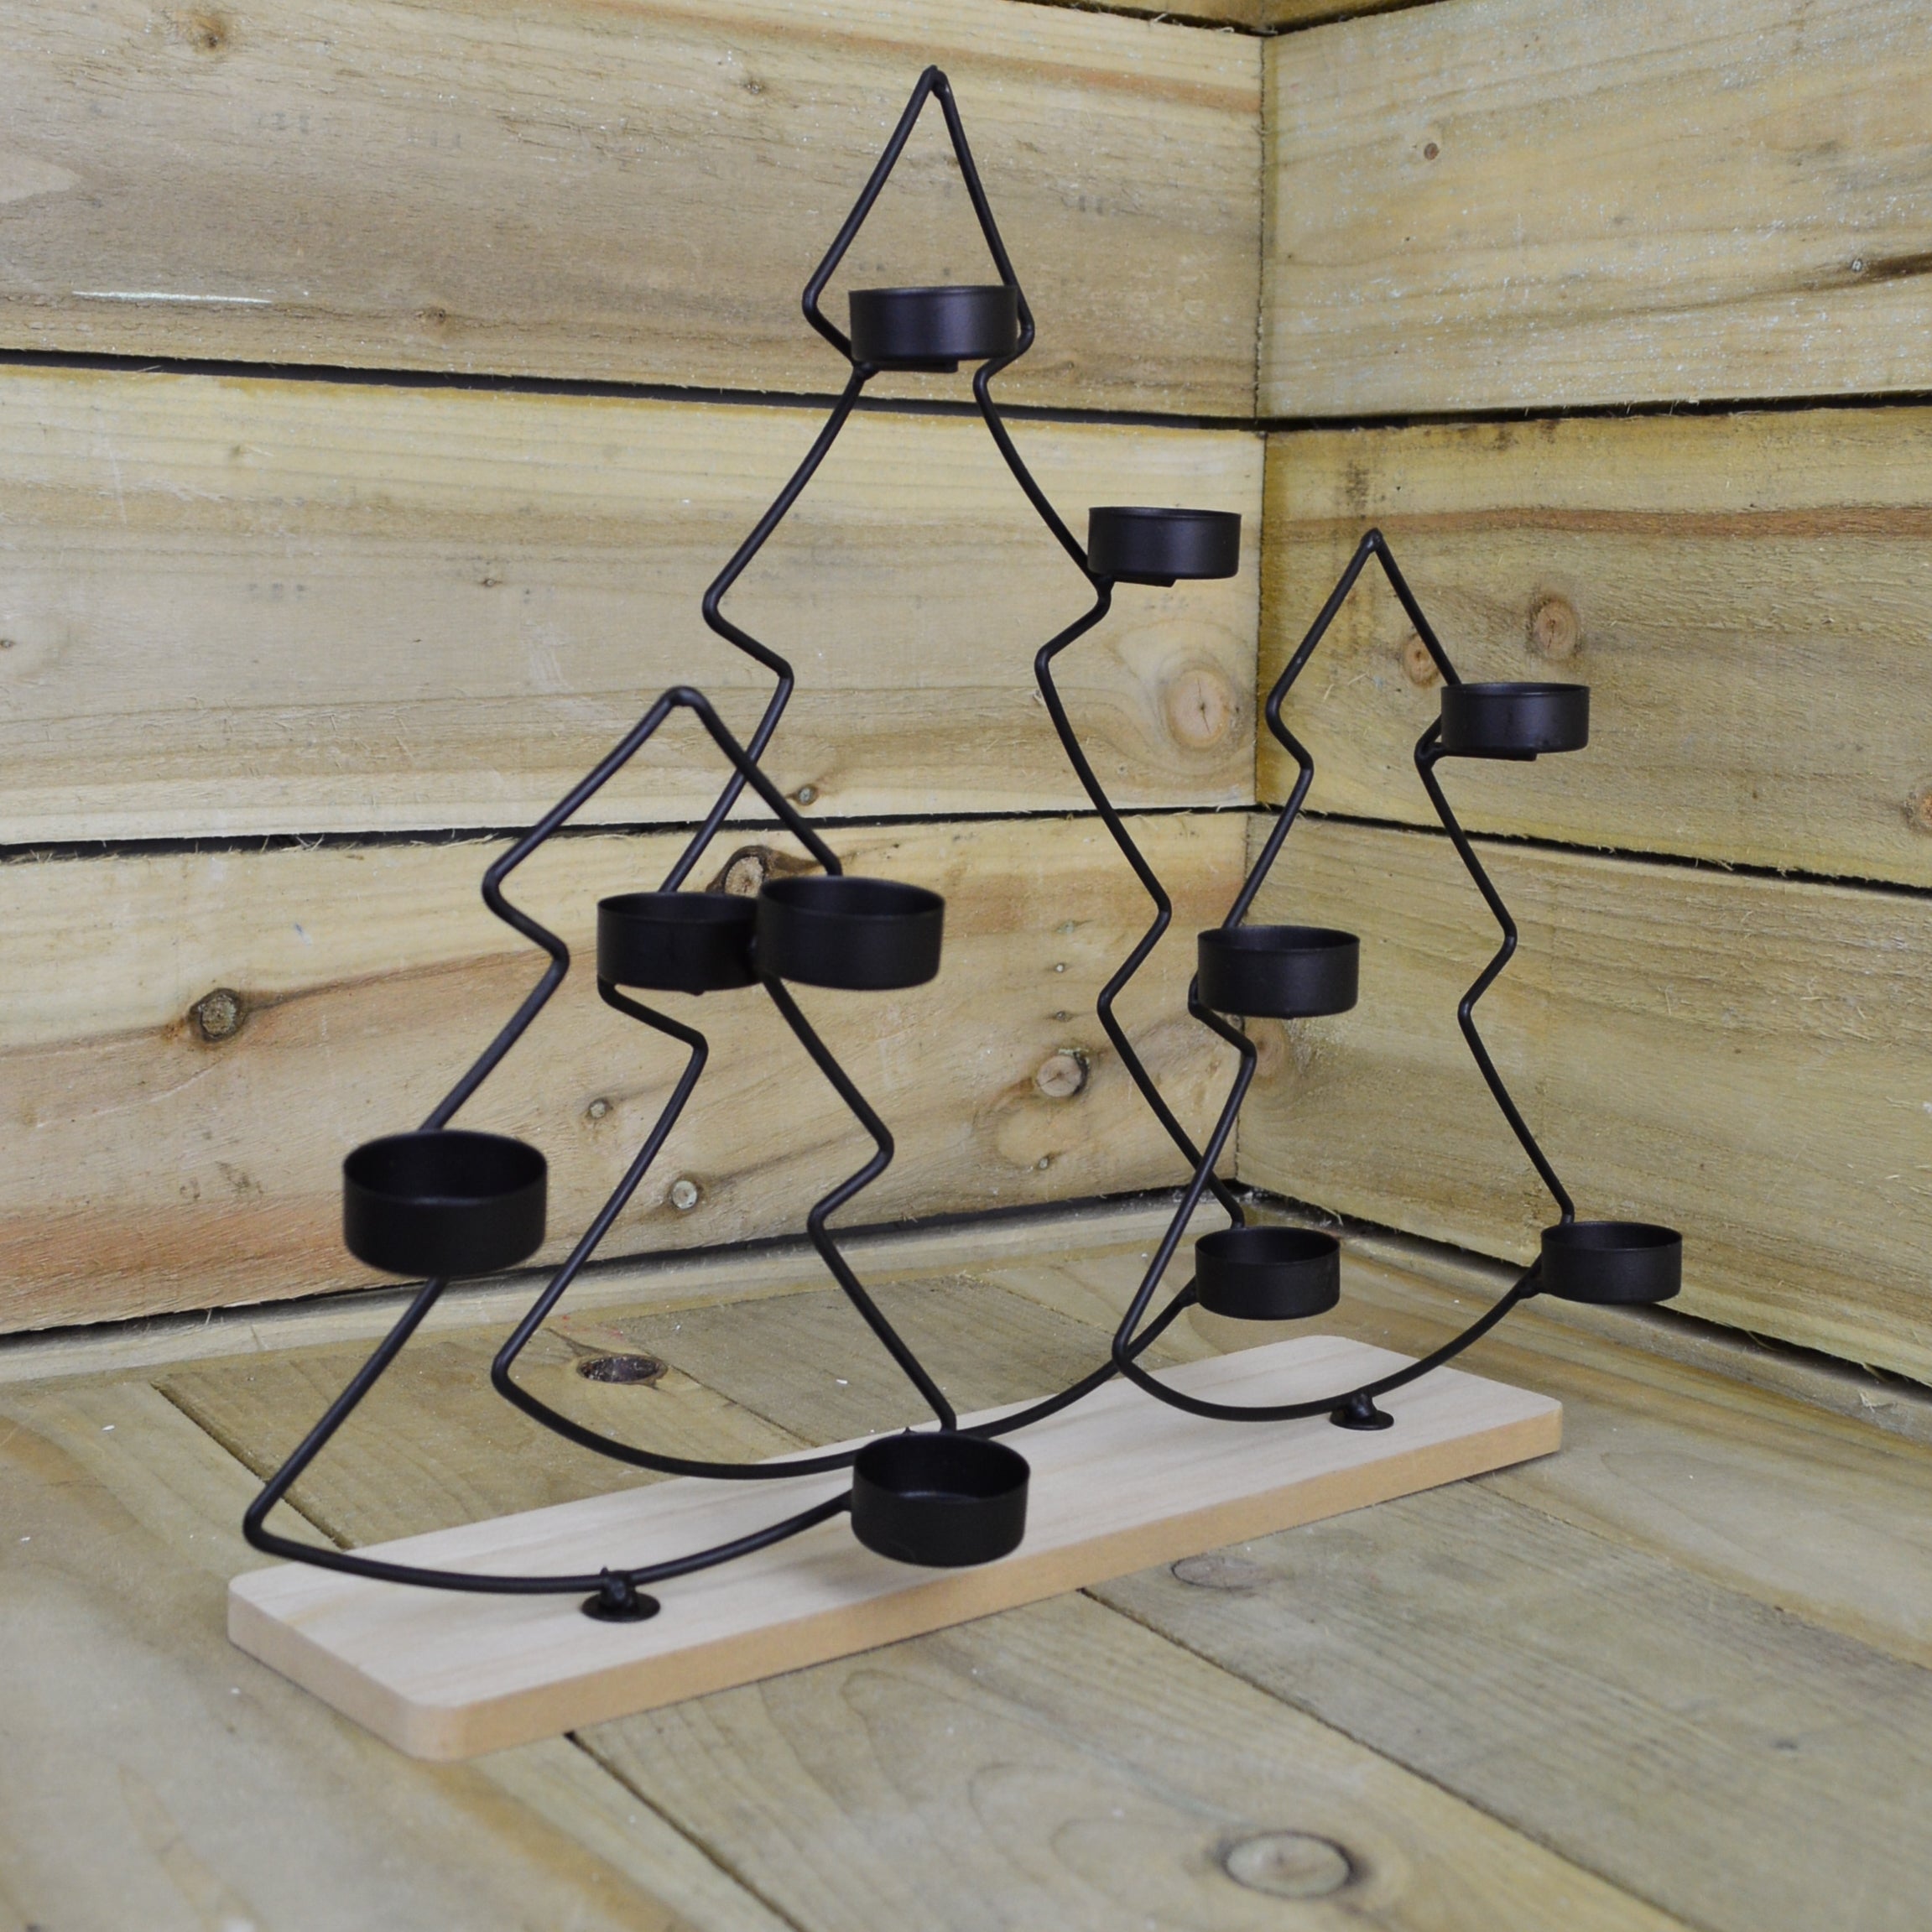 38cm Black Christmas Tree Tealight Holder on Wooden Base